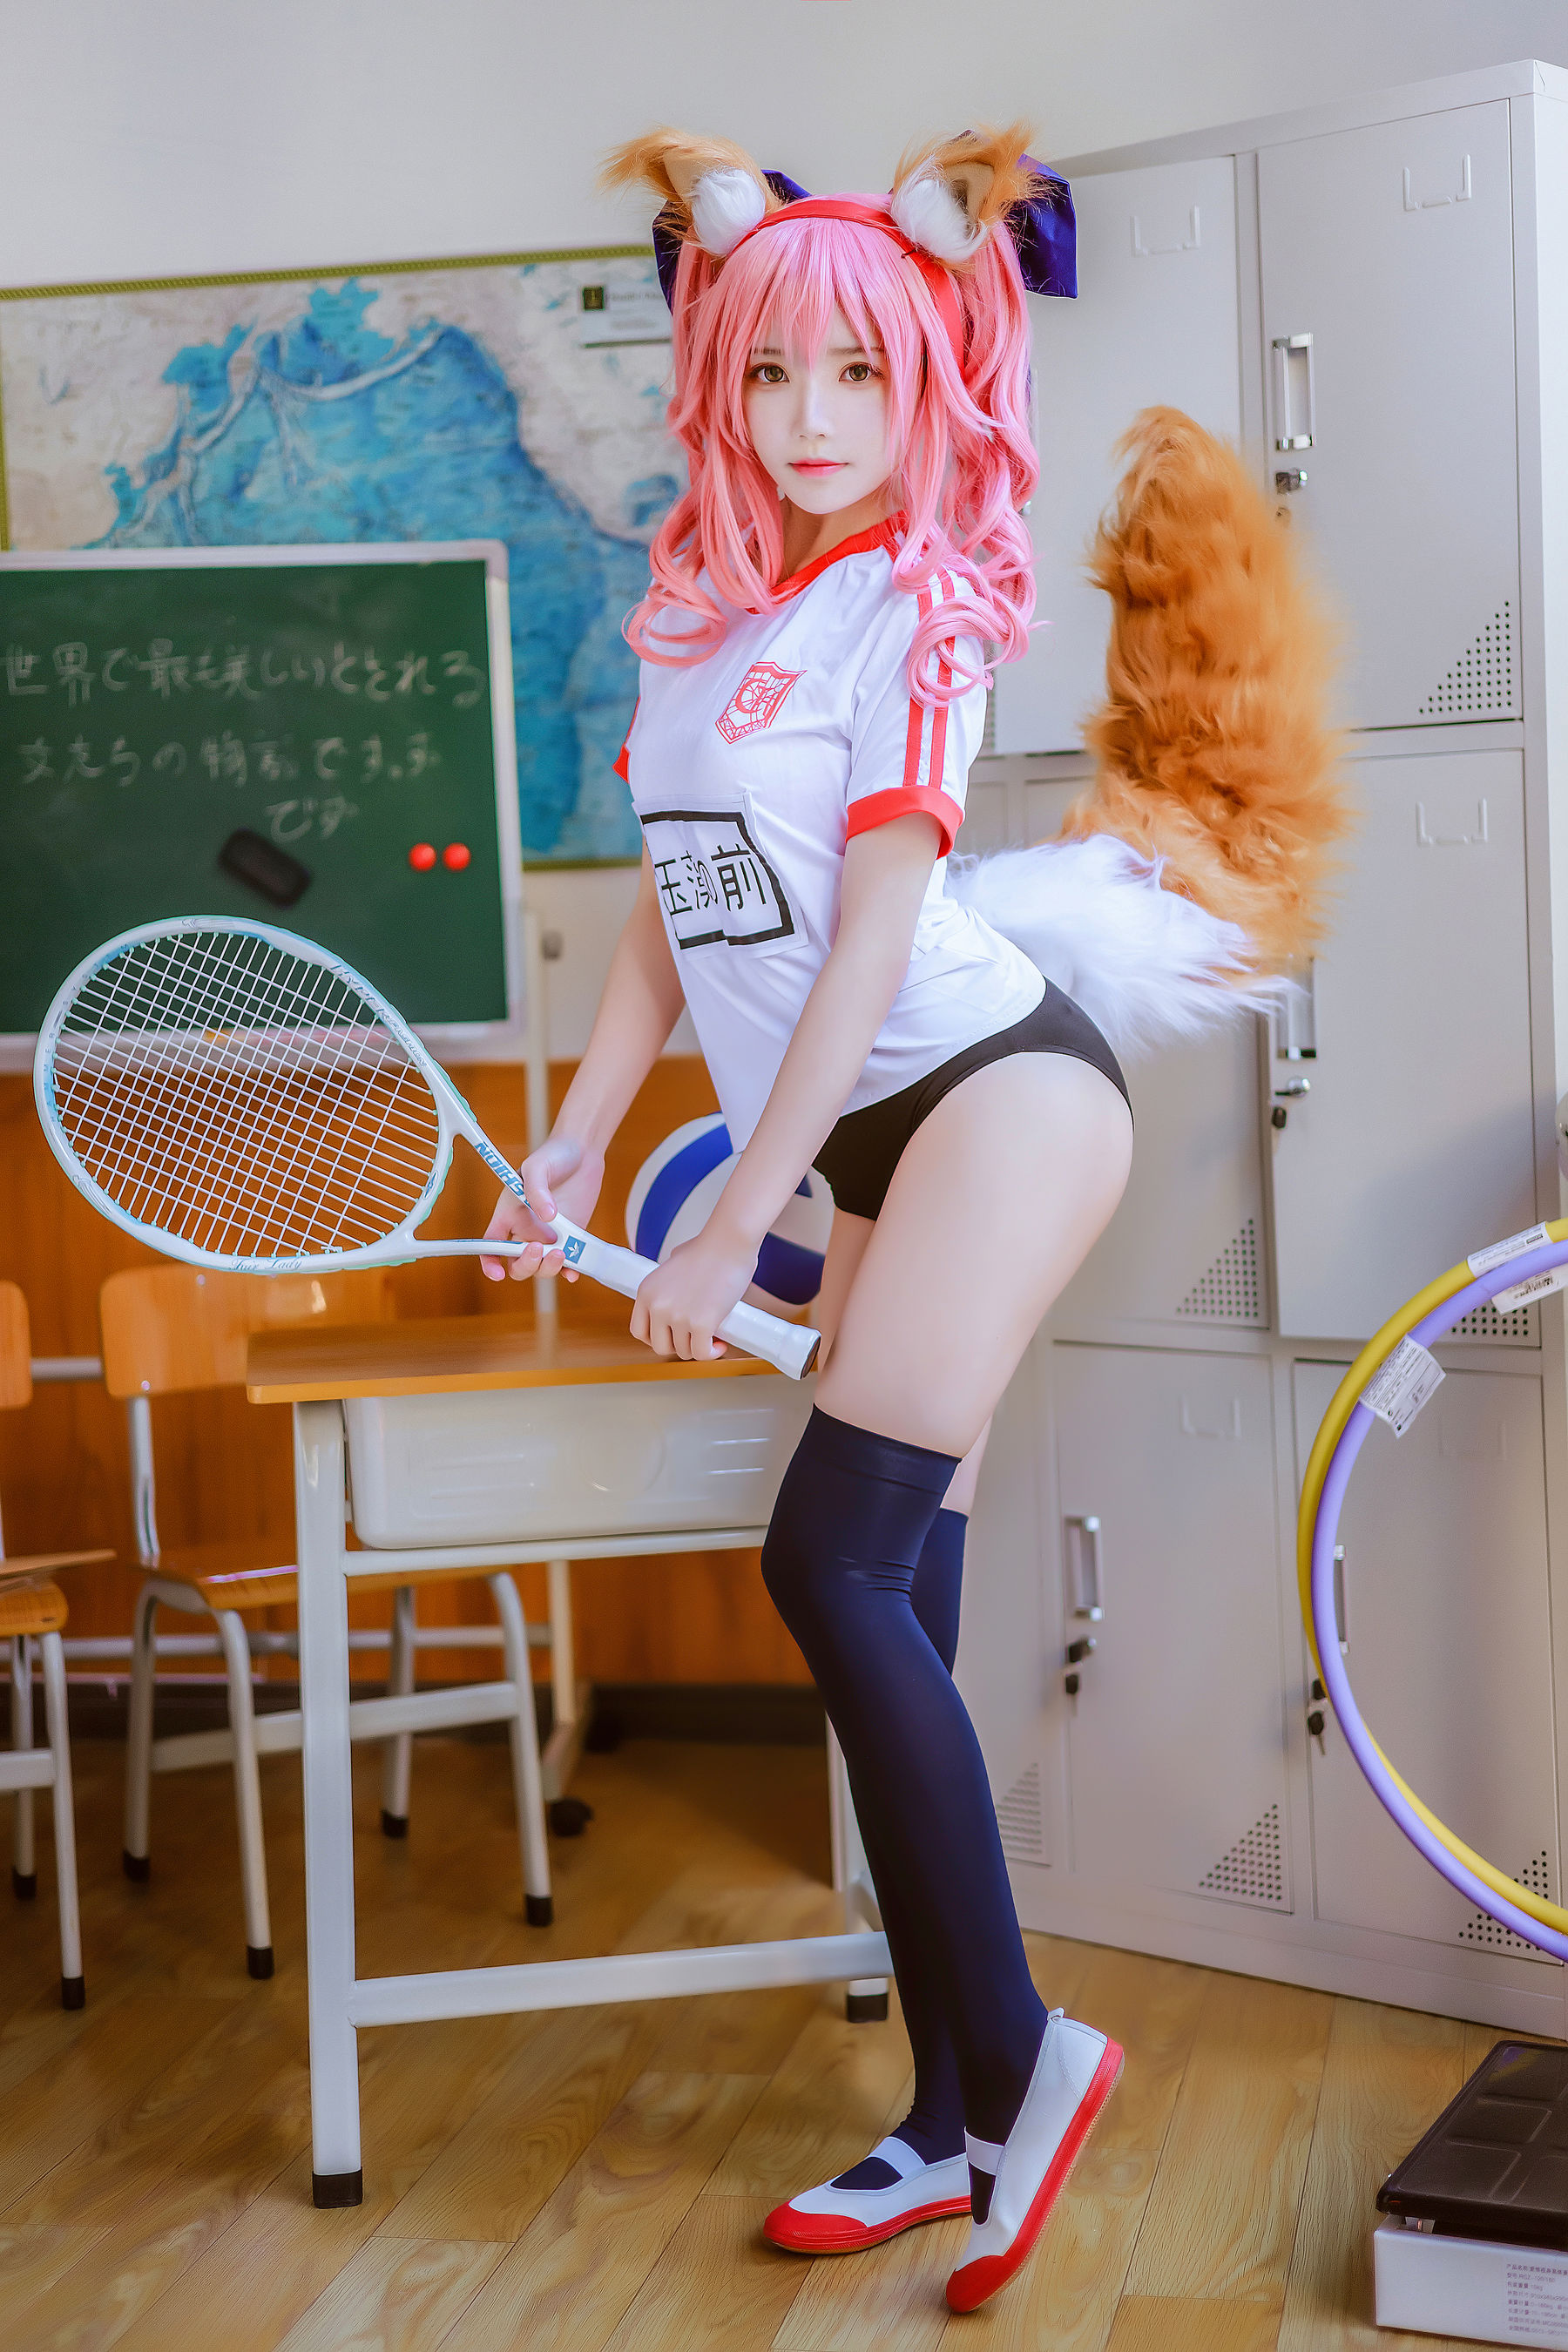 [Net Red COSER Photo] Cherry Peach Meow - Ex tuta da ginnastica Tamamo Pagina 23 No.01c4ad